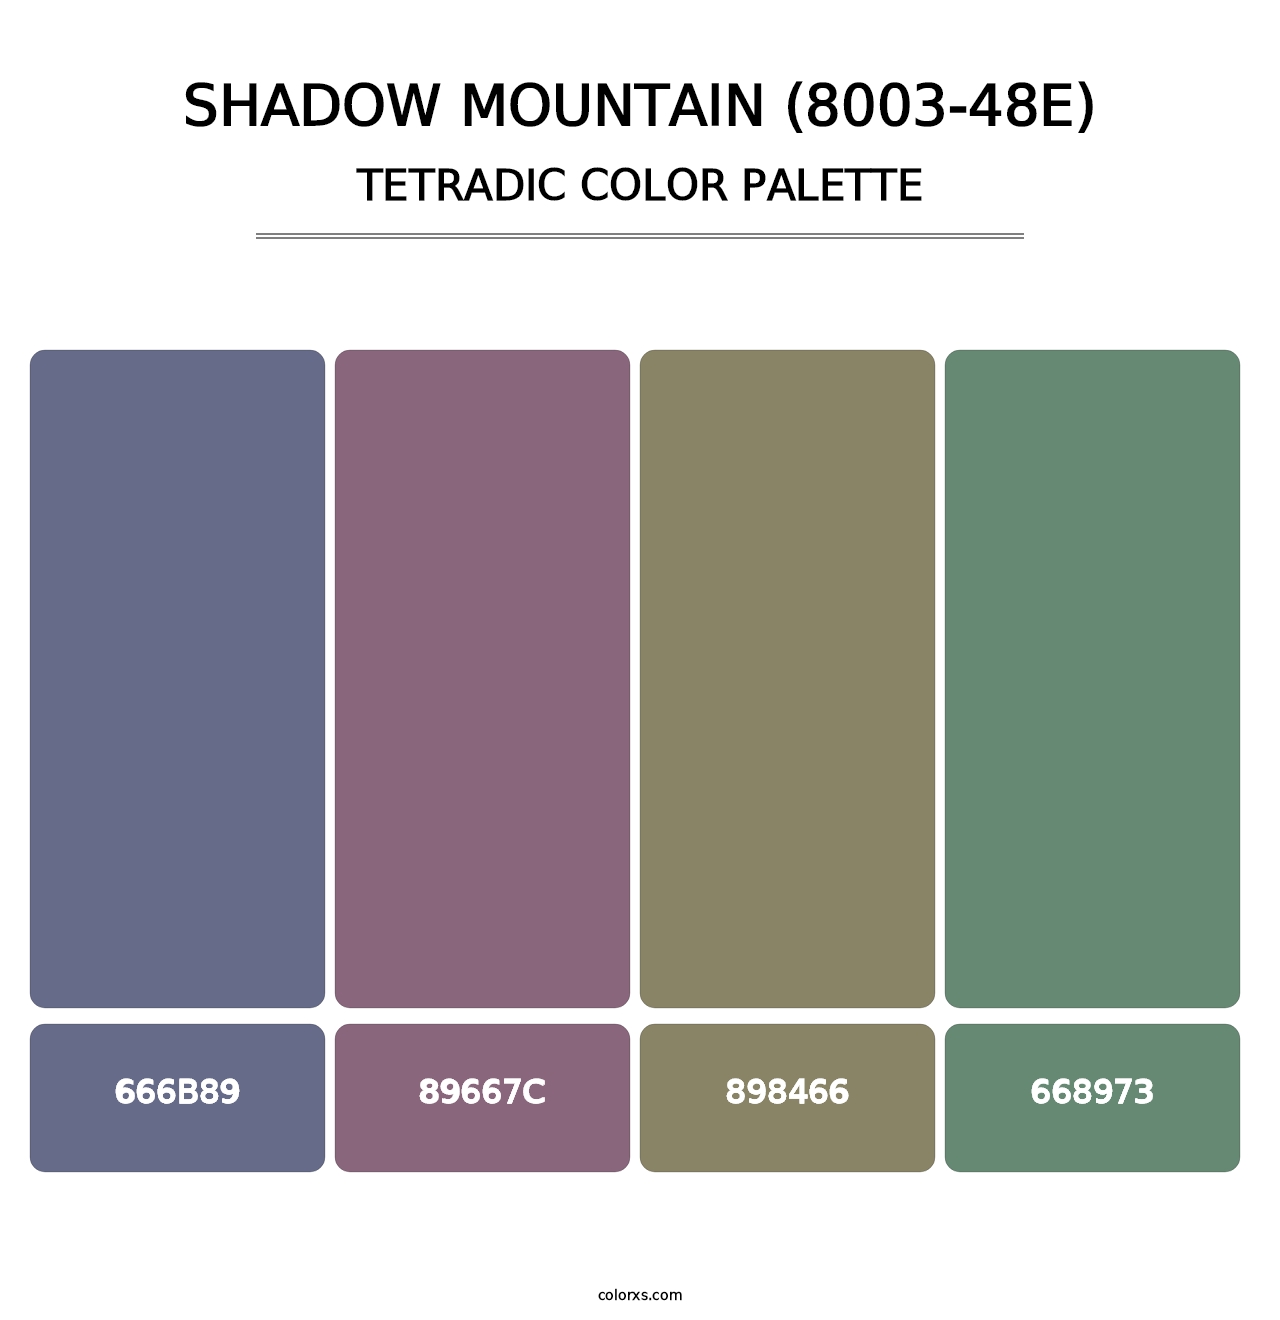 Shadow Mountain (8003-48E) - Tetradic Color Palette